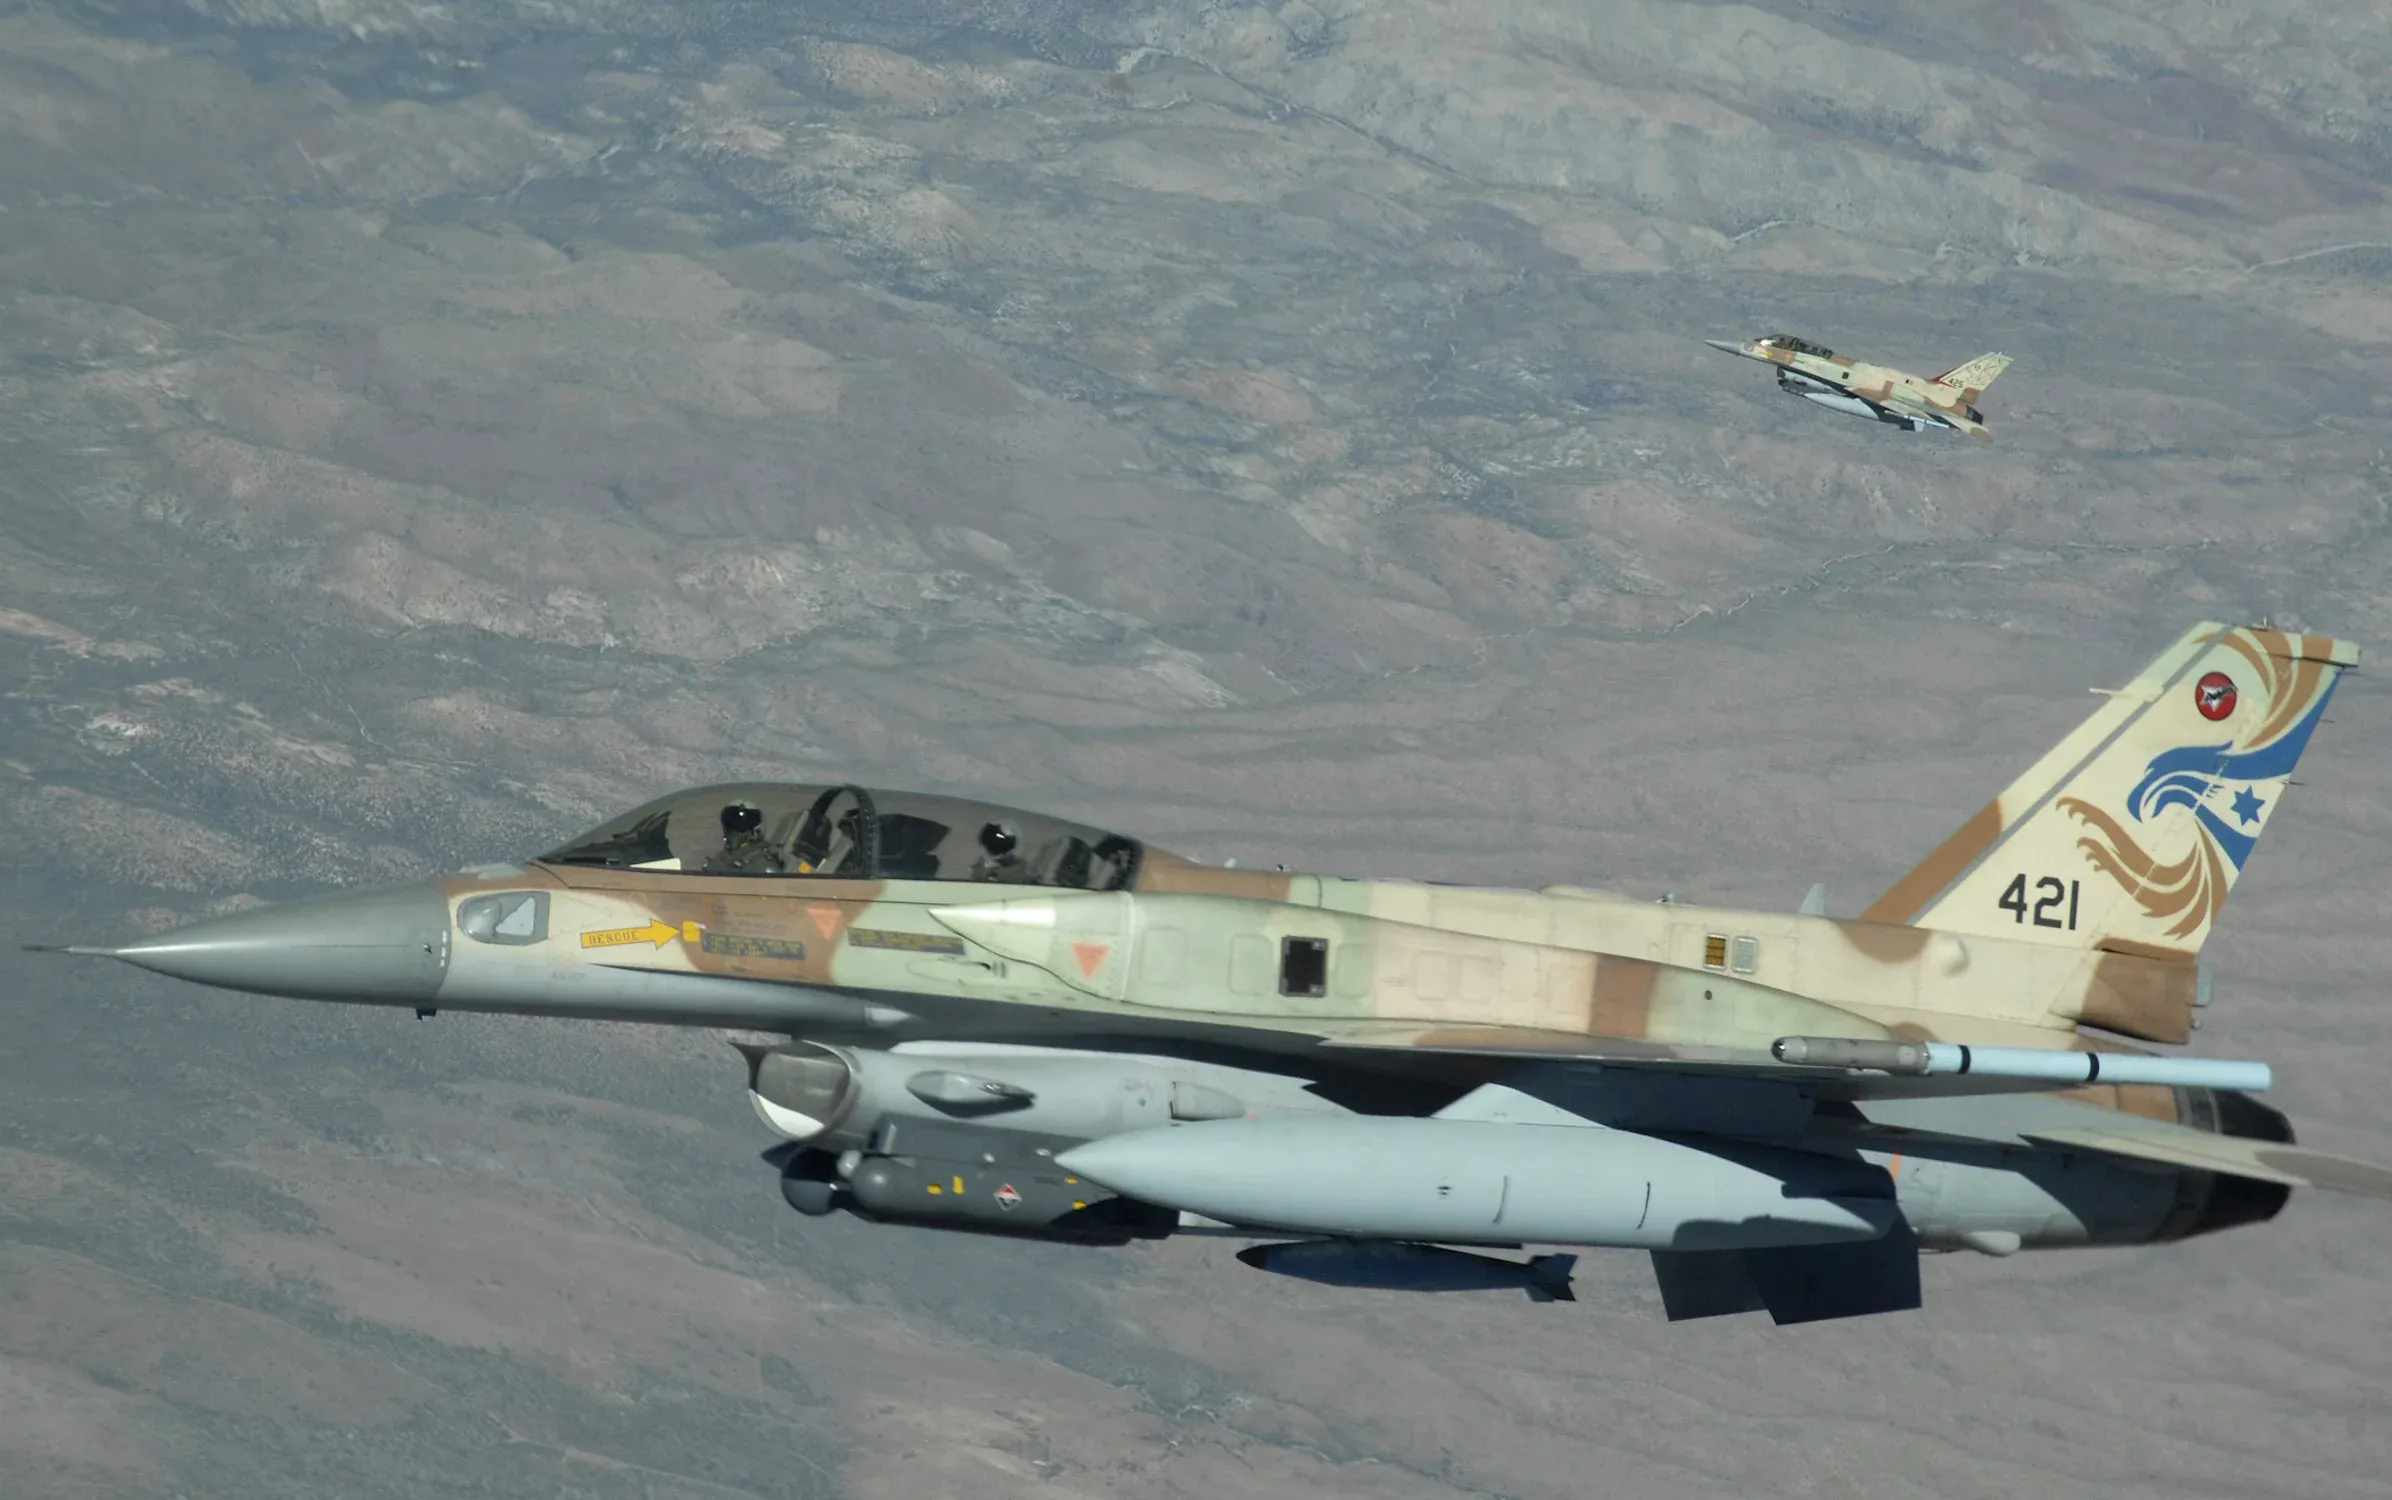 "المصالحة الروسي": مقاتلتين "إف-16" إسرائيليتين استخدمتا في هجوم دمشق الأخير